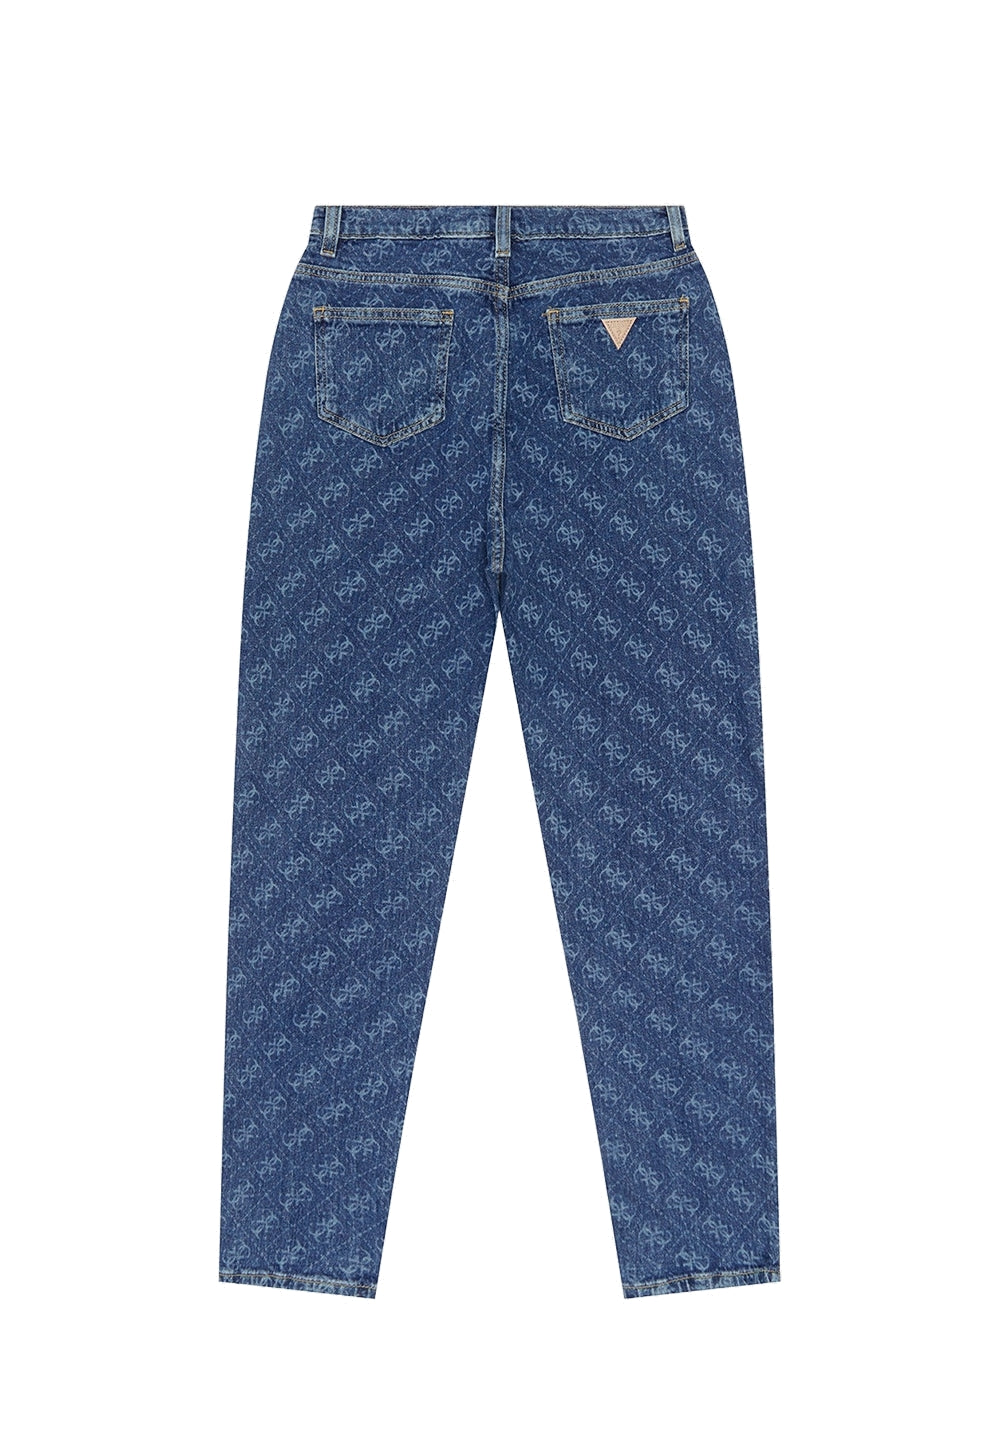 Jeans blu denim per bambina - Primamoda kids